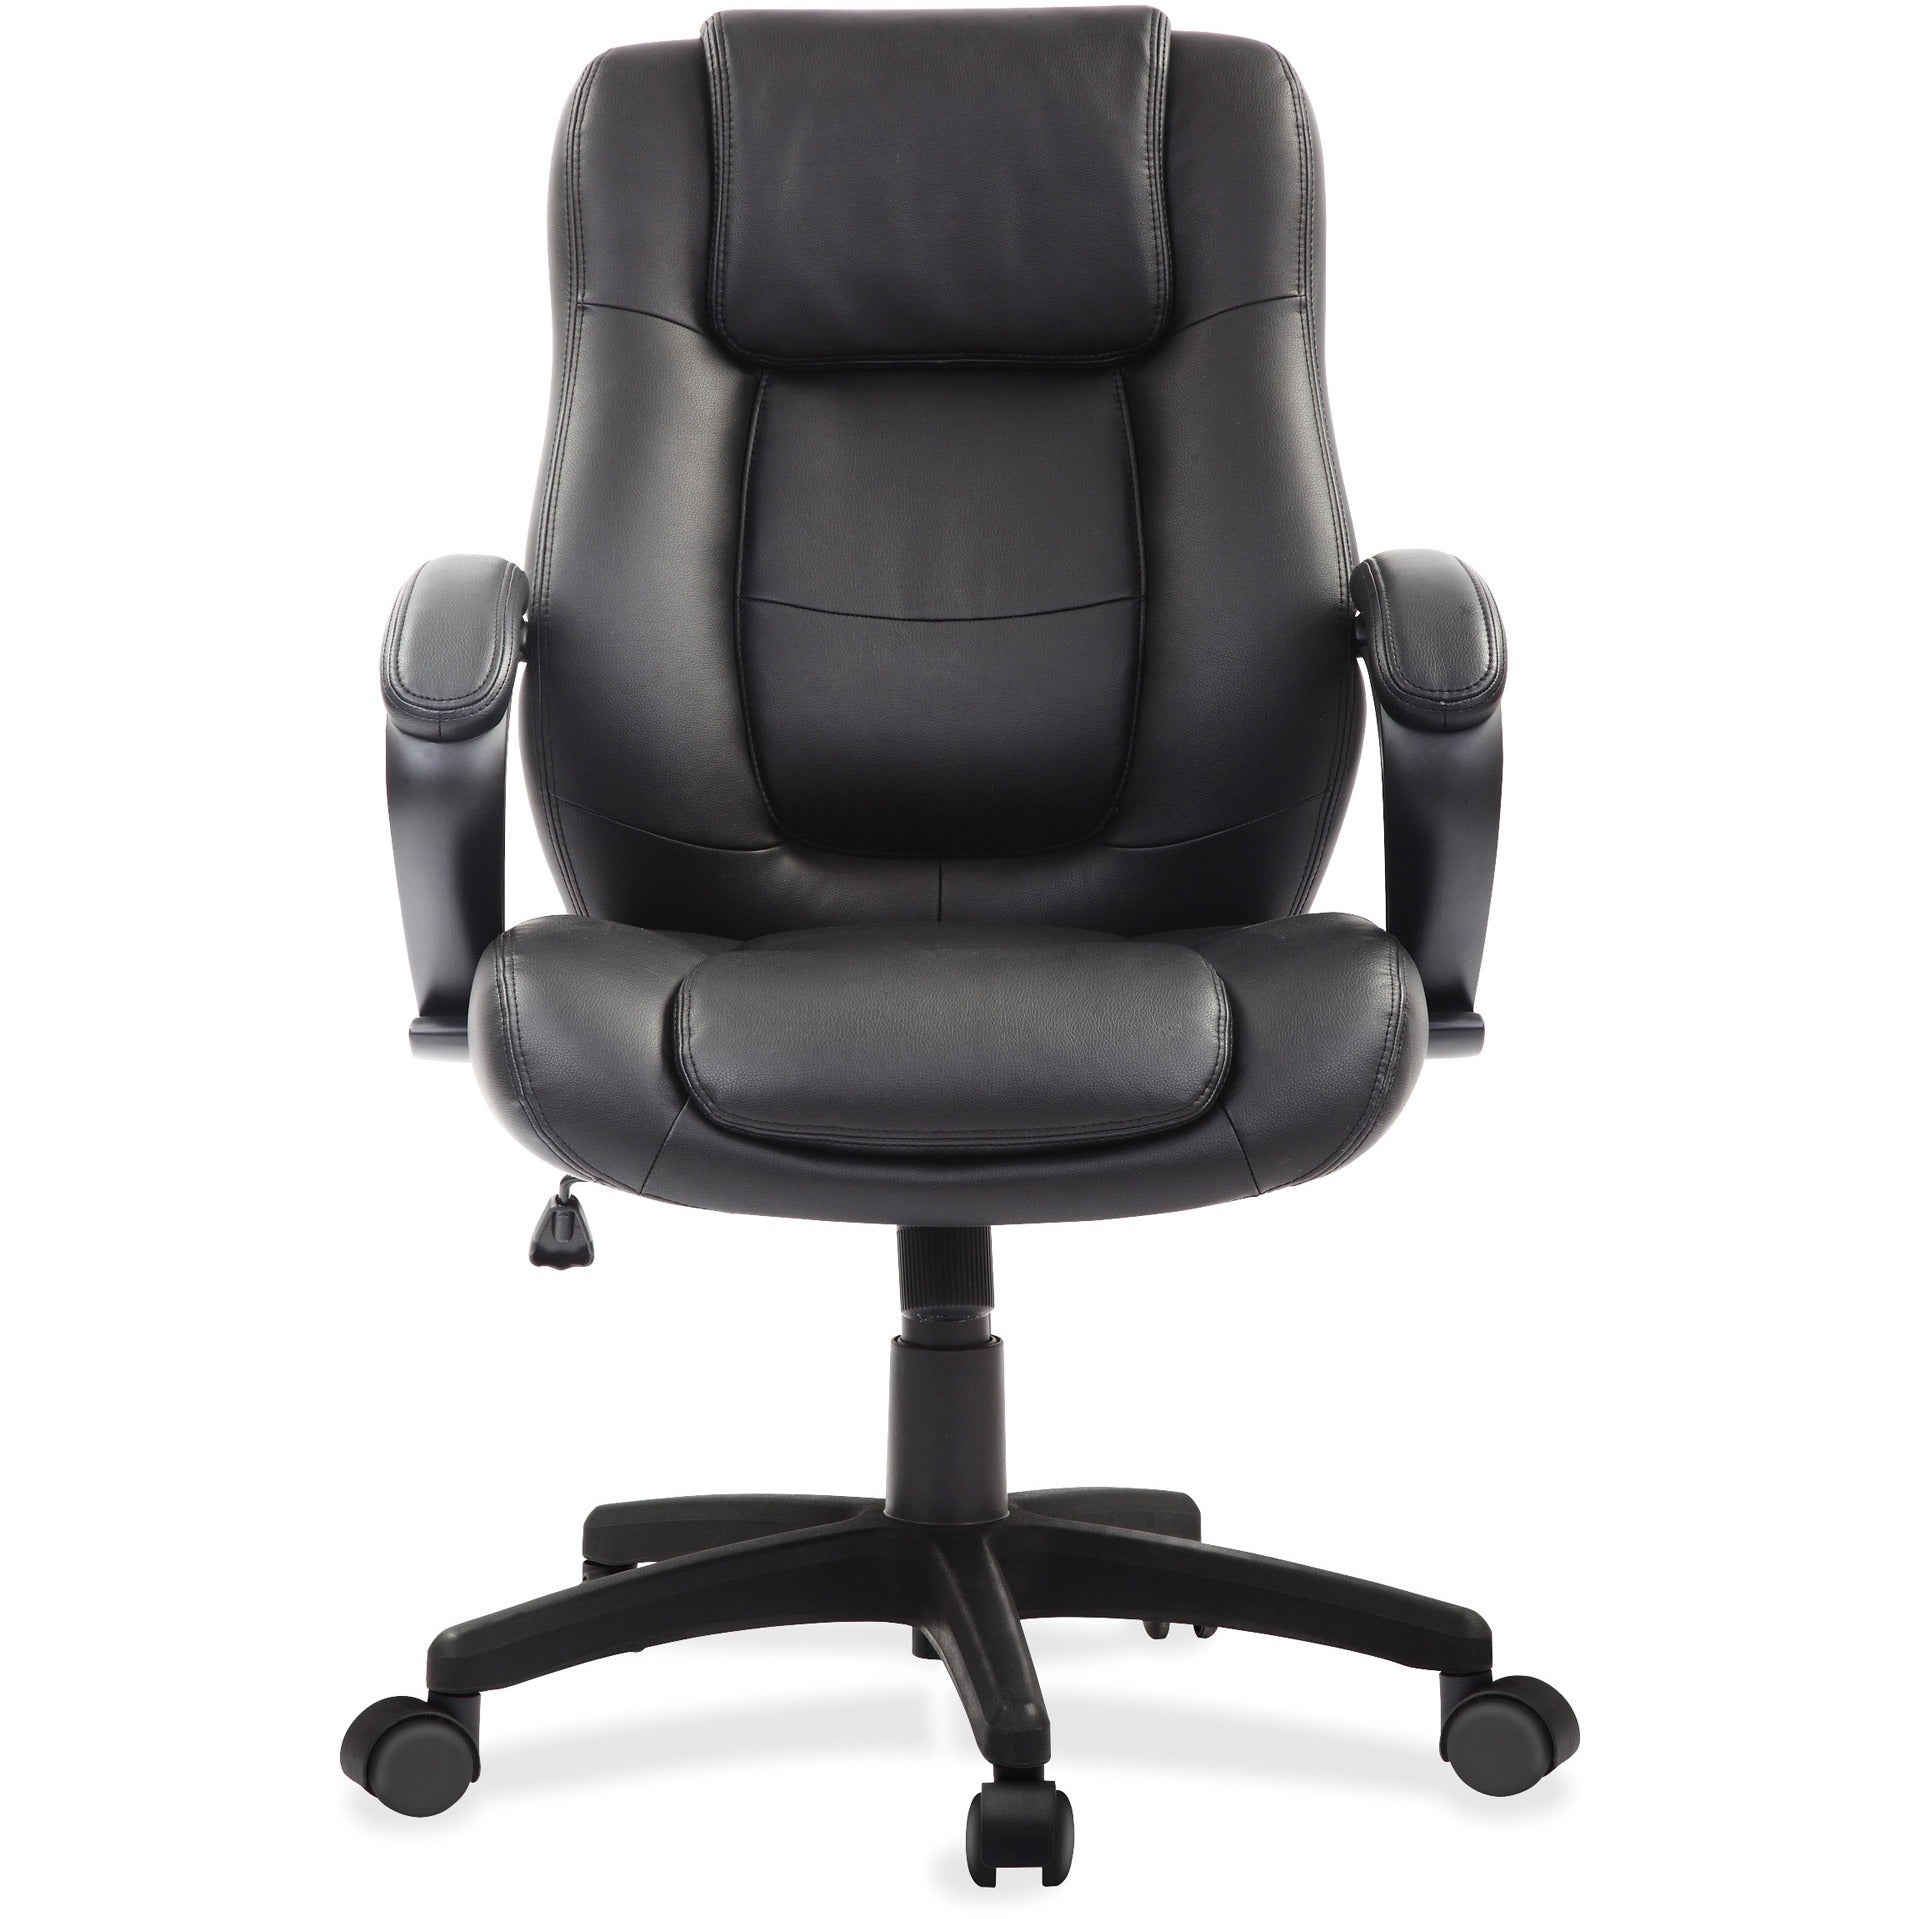 eurotech-pembroke-mid-back-executive-chair-black-bonded-leather-seat-black-bonded-leather-back-low-back-5-star-base-1-each_eutle522 - 2